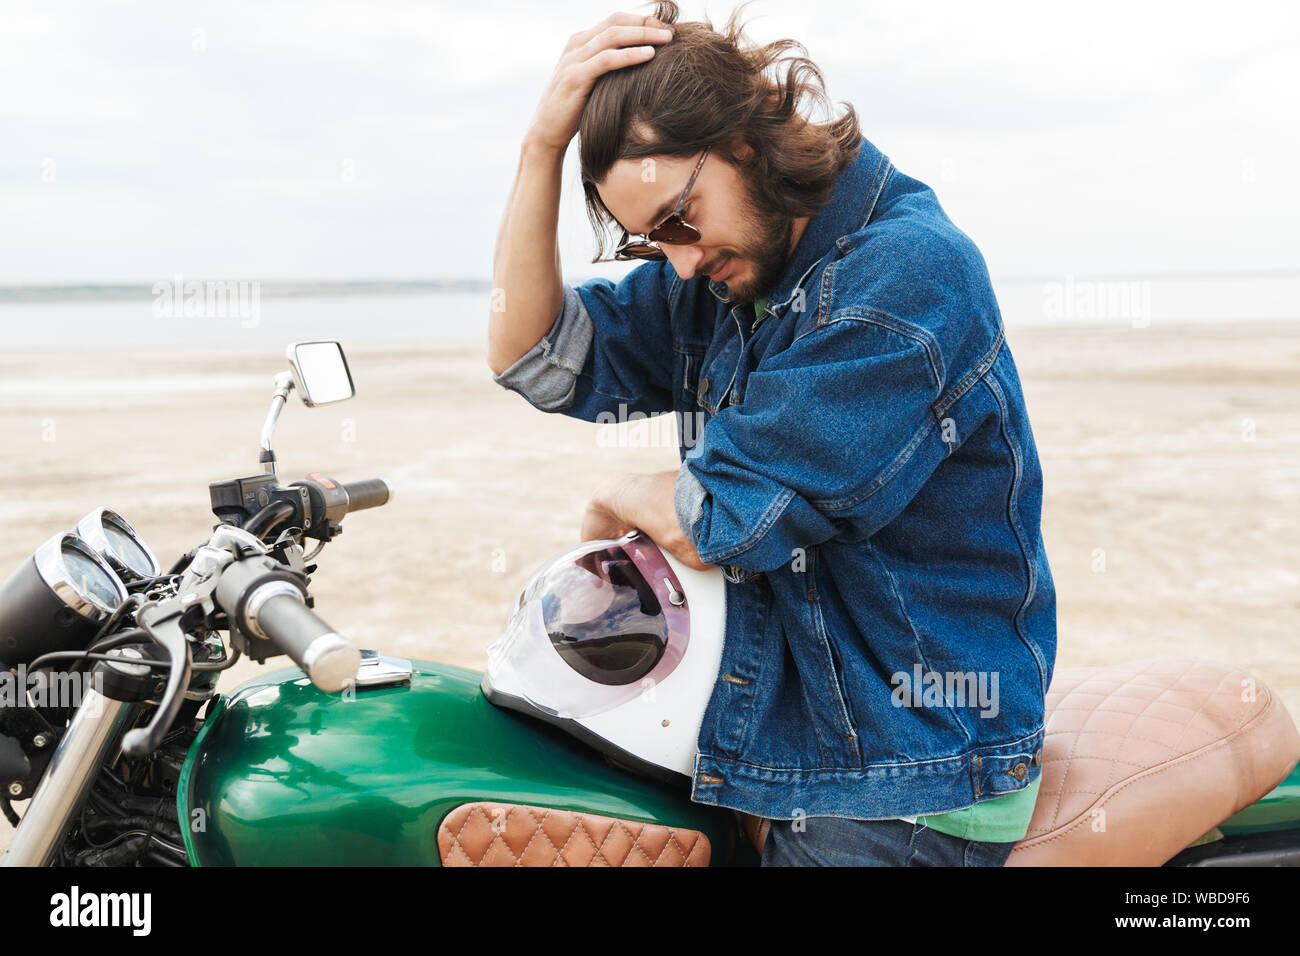 Beau jeune homme portant tenue décontractée assis sur une moto à la plage Banque D'Images